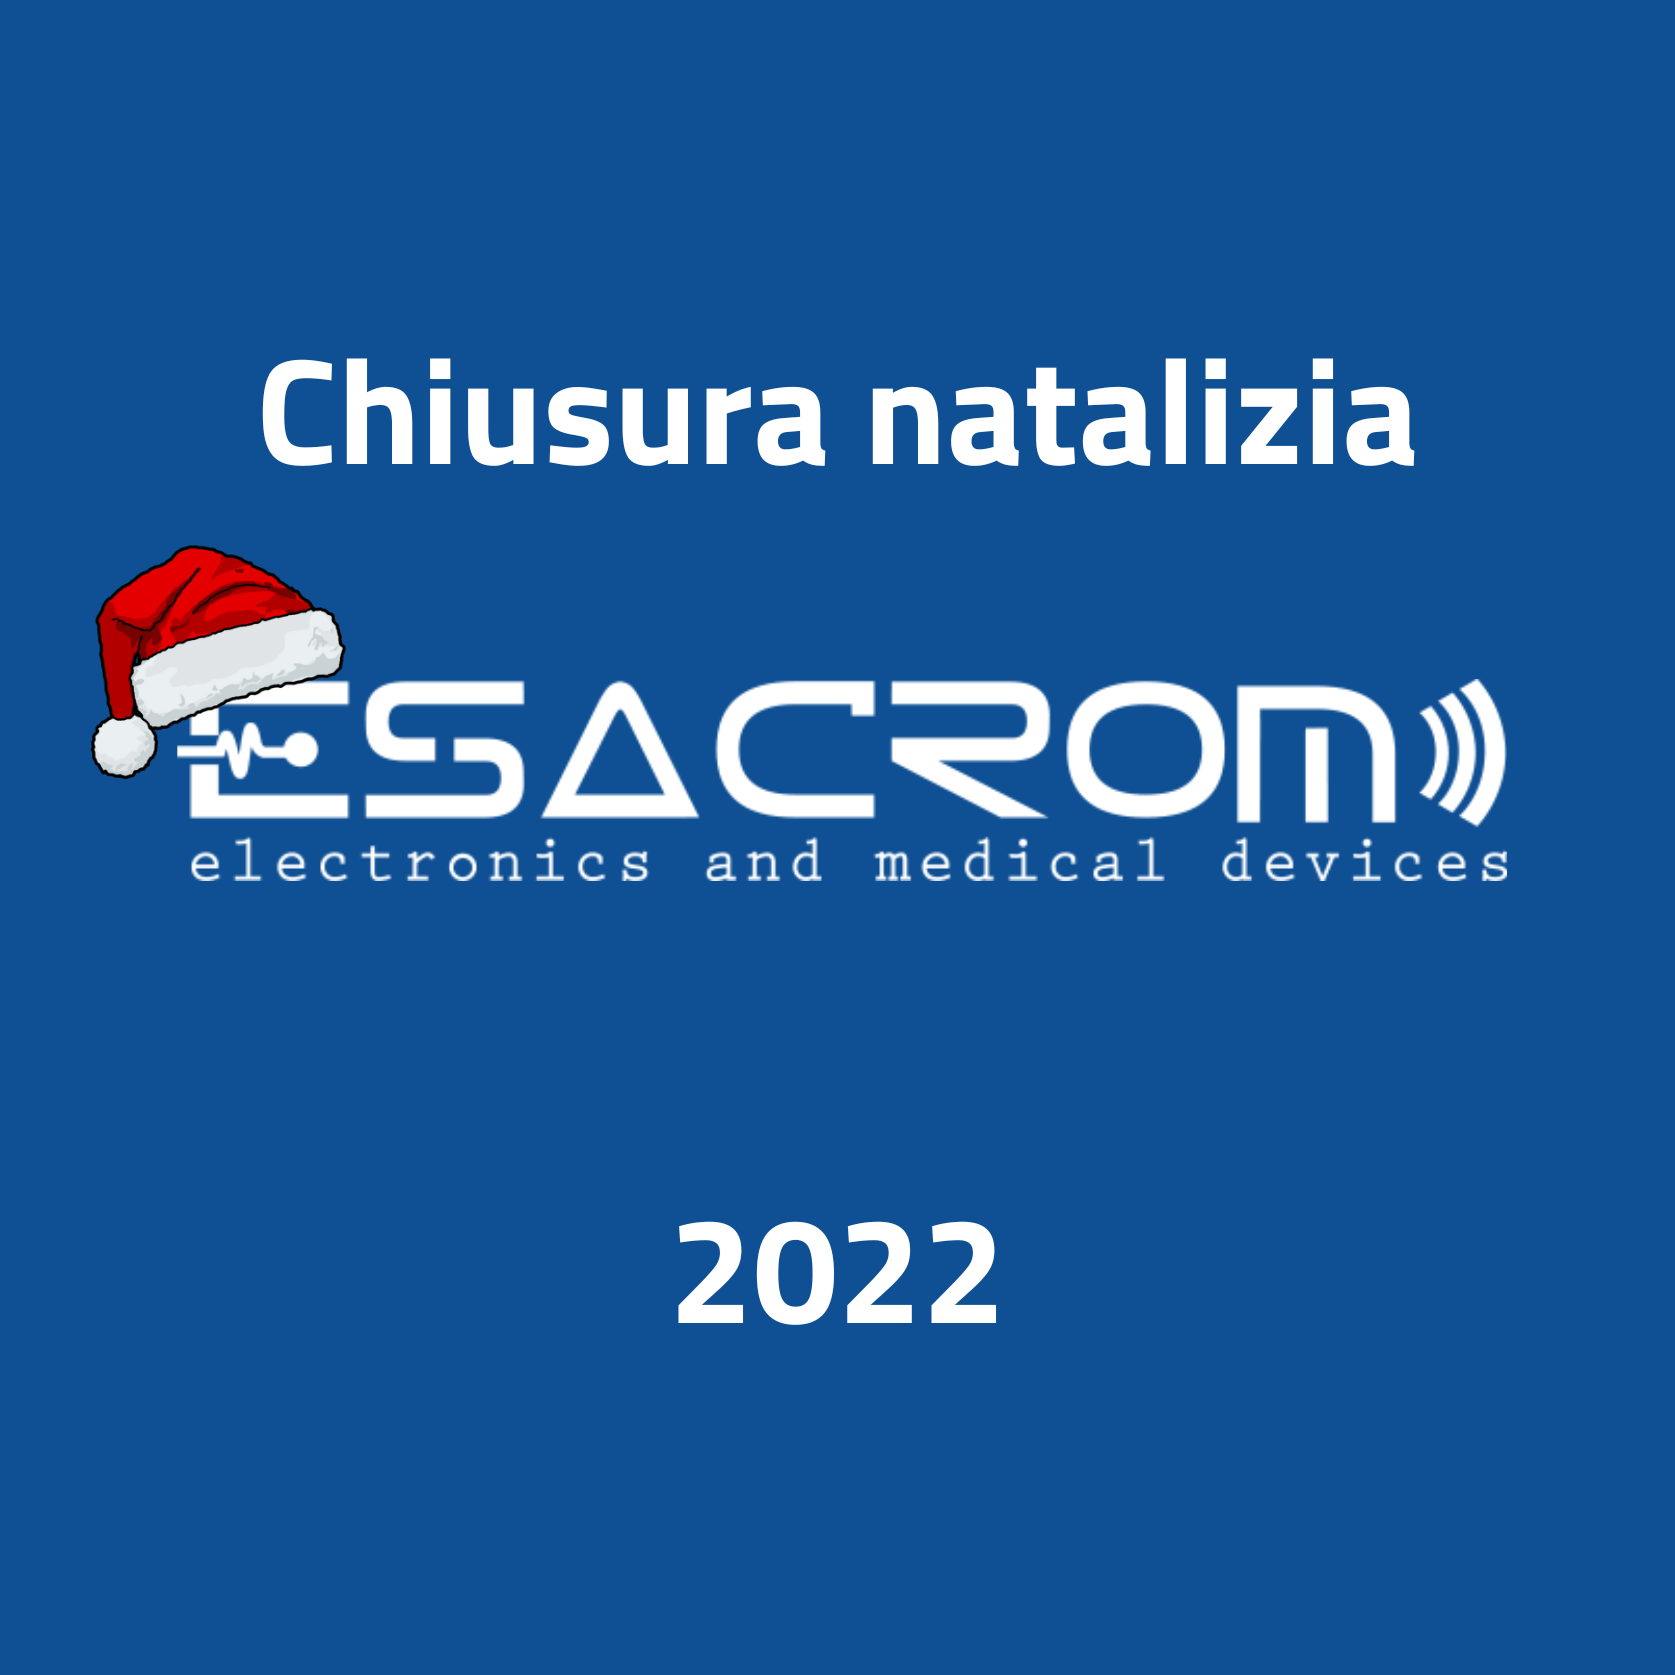 Chiusura natalizia Esacrom 2022